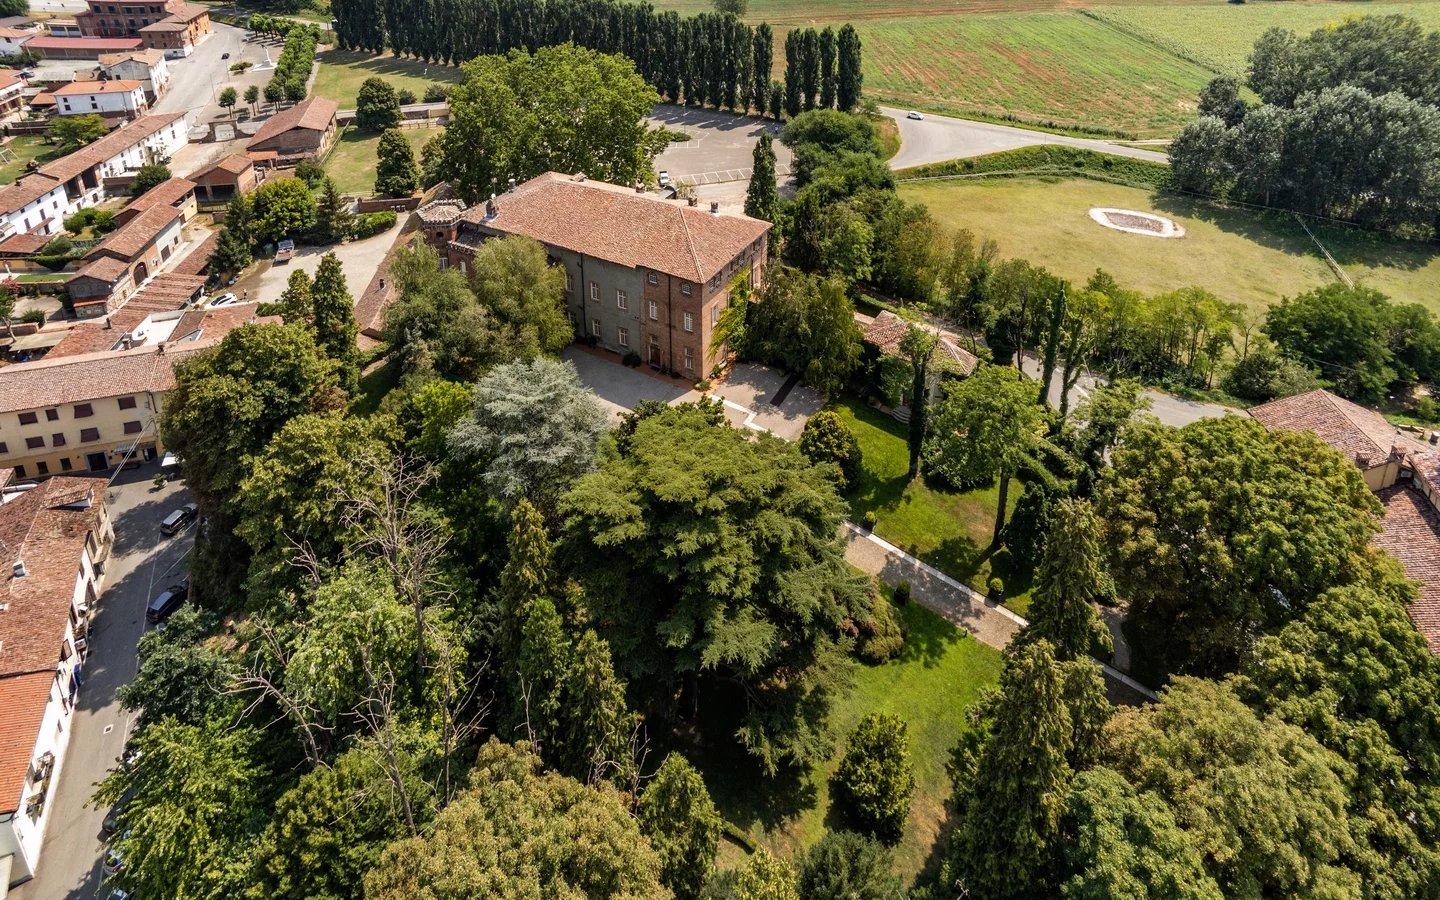 castello di oviglio monferrato riprese aeree foto di interni castello in vendita immobili di pregio luxury real estate dimore storiche flavio chiesa